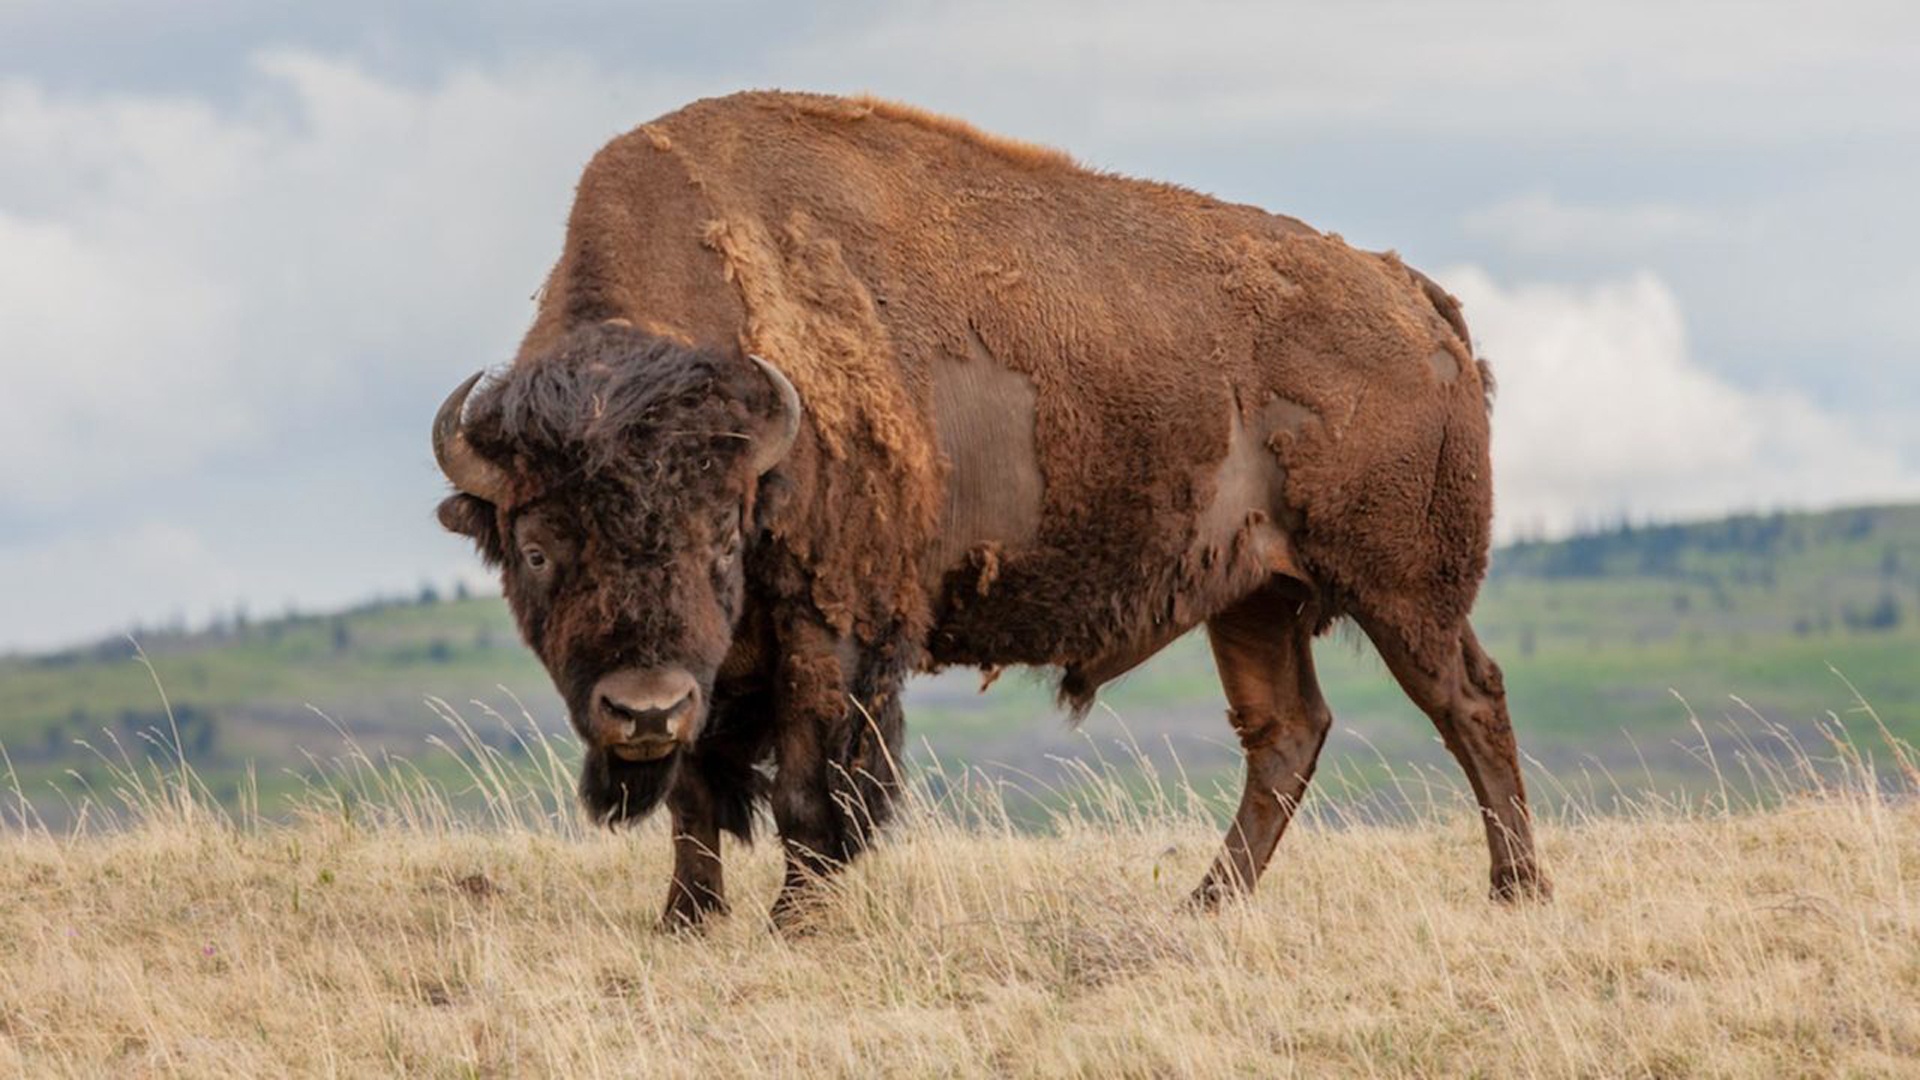 Grassland животные. Животные прерии Северной Америки. Картинка бизоны в степи фото. Канал бизон